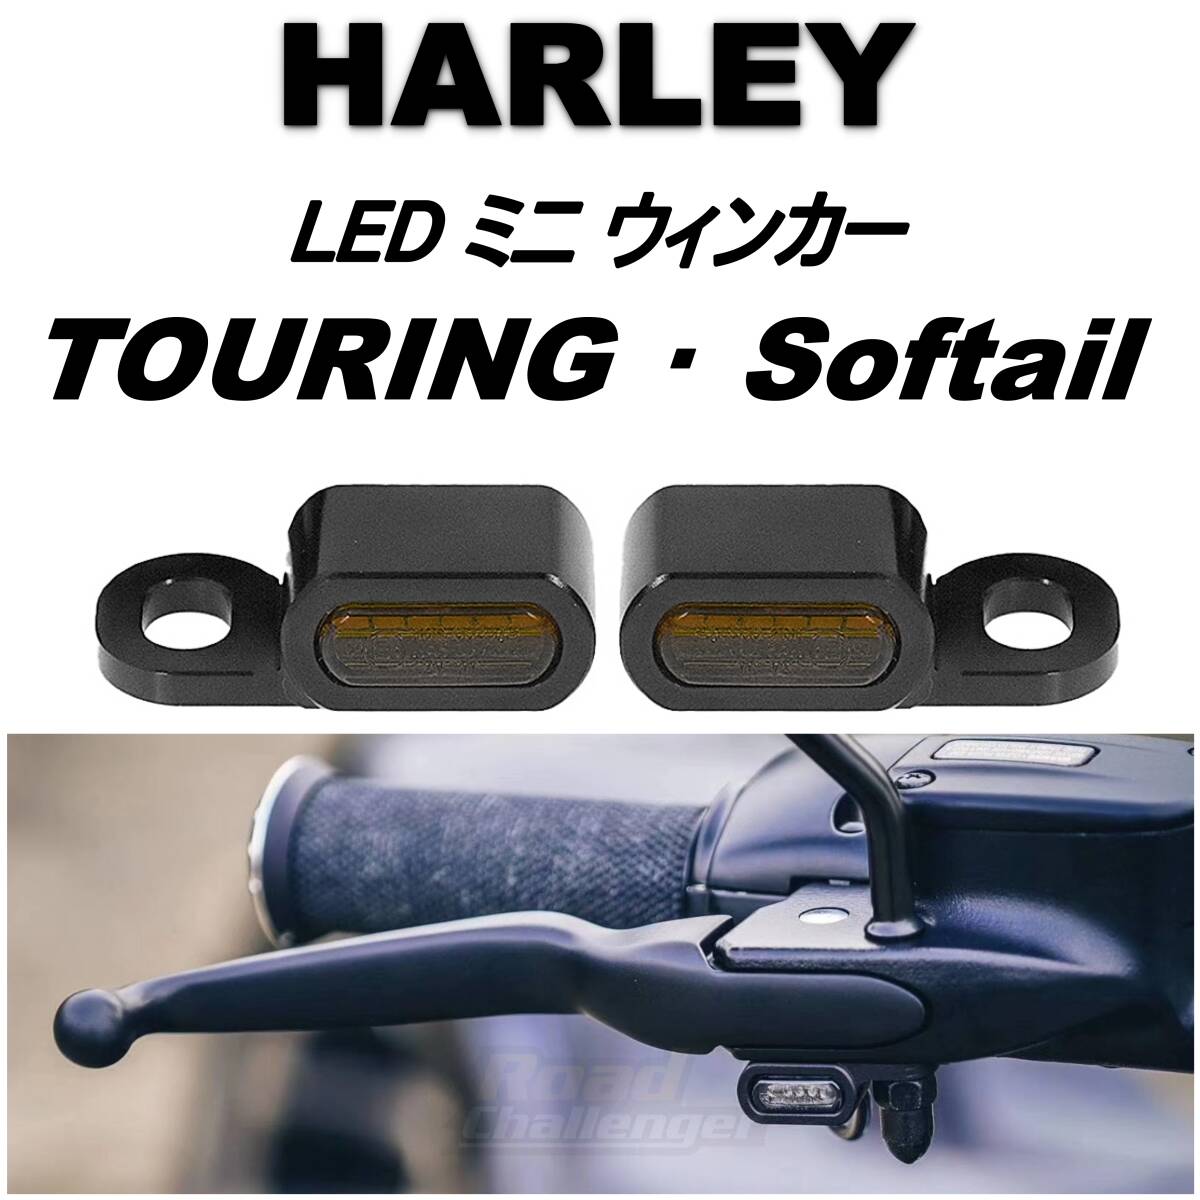 HAELEY ツーリング ソフテイル 用 LED ミニ ウインカー 2個 Eマーク付き 車検対応 黒 スモークレンズ ウィンカー ターンシグナル ハーレー_画像1